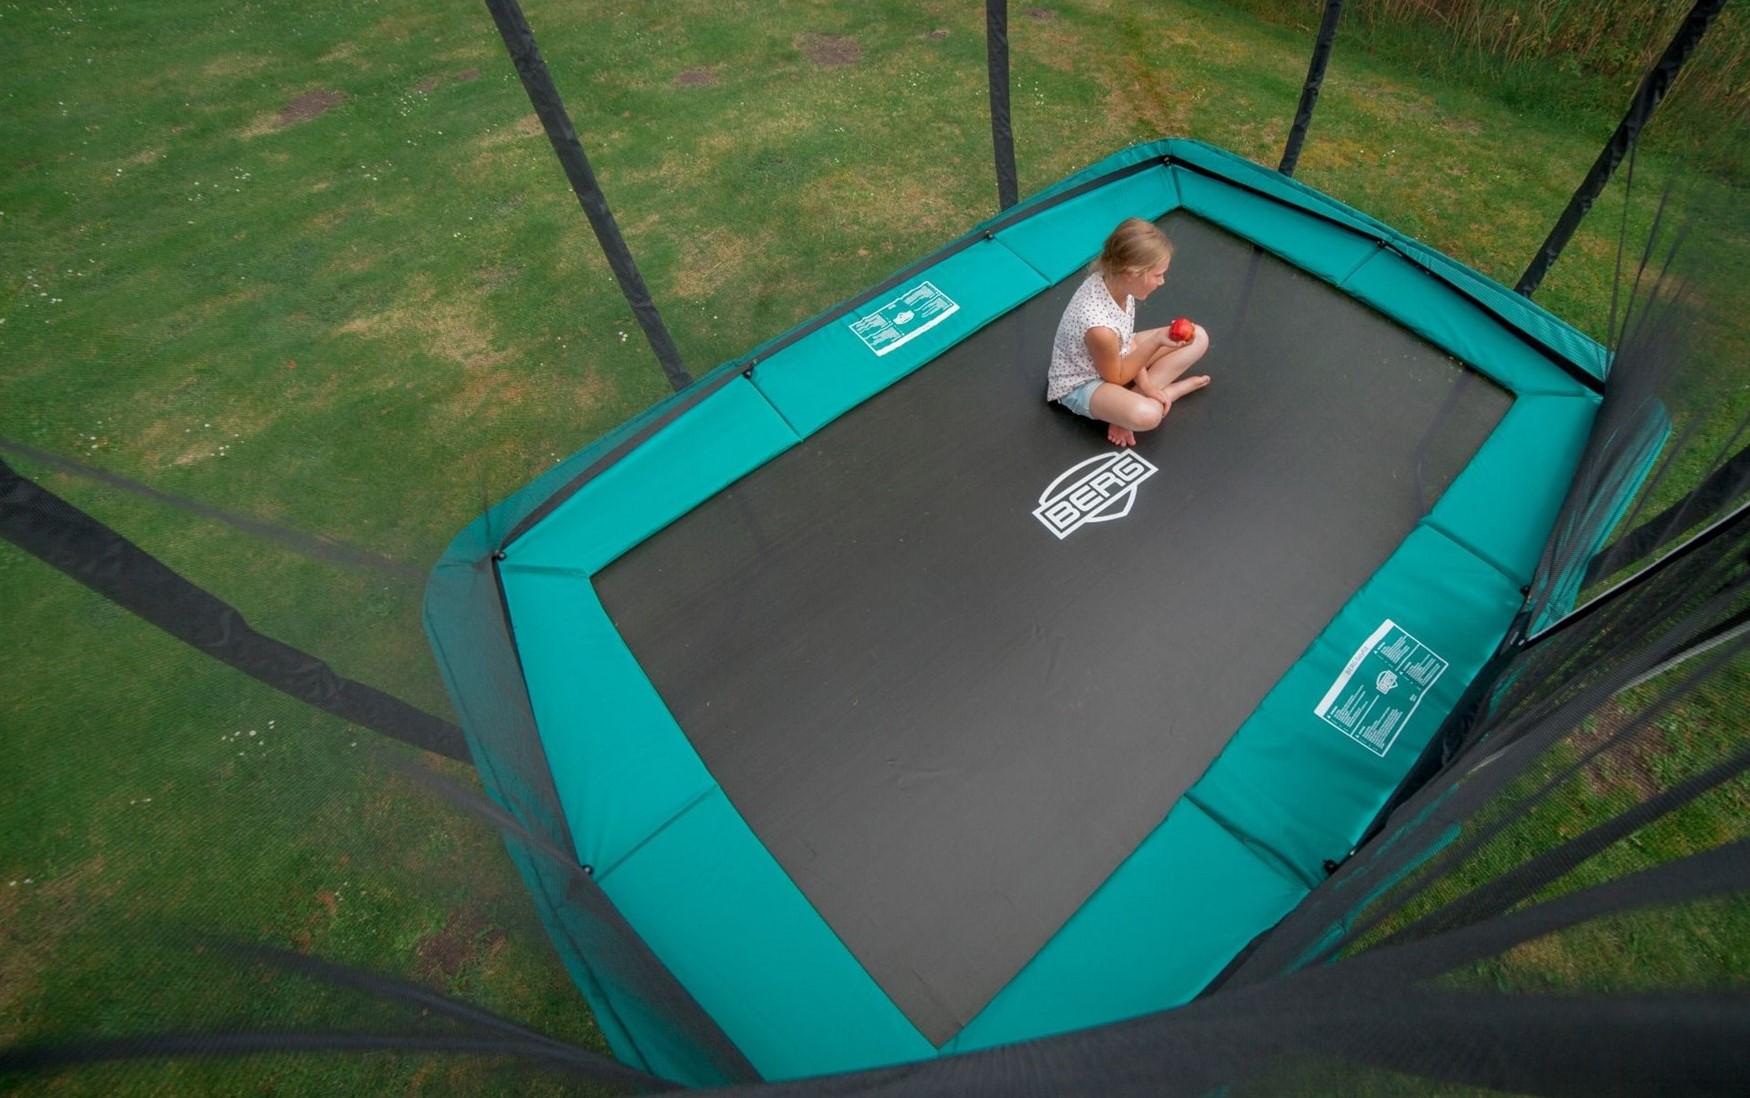 Alstublieft Transparant mist BERG Sports inground trampoline Ultim Champion, afm. 330 x 220 cm - zonder  veiligheidsnet - groen bij Buitengoed